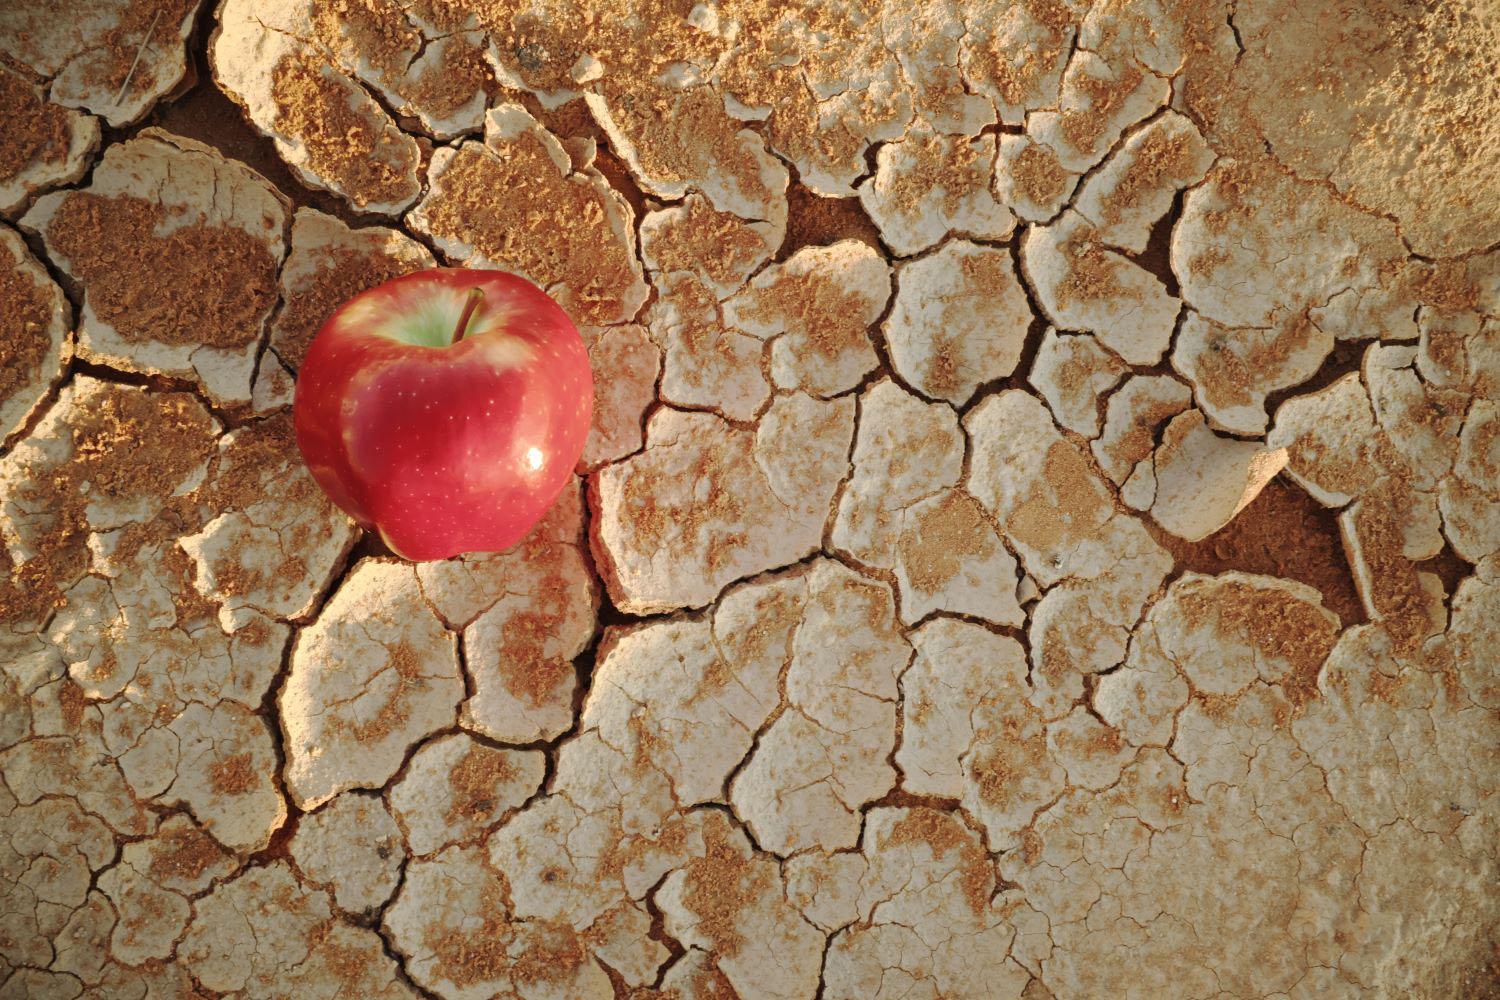 An apple on a dry cracked desert soil